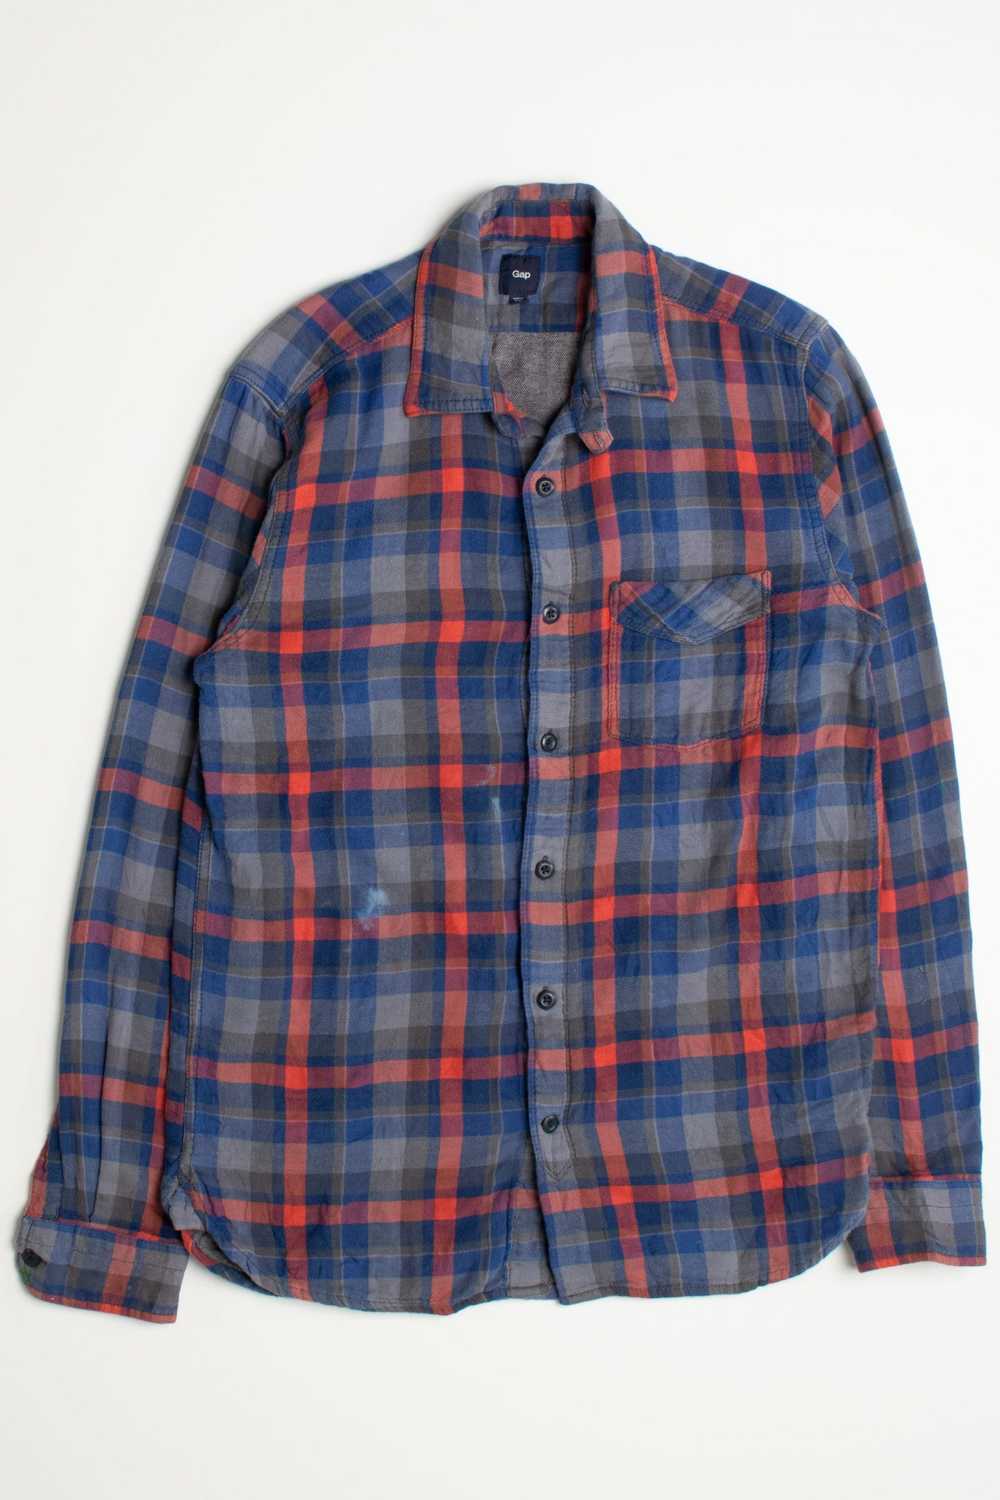 Vintage Gap Flannel Shirt - image 2